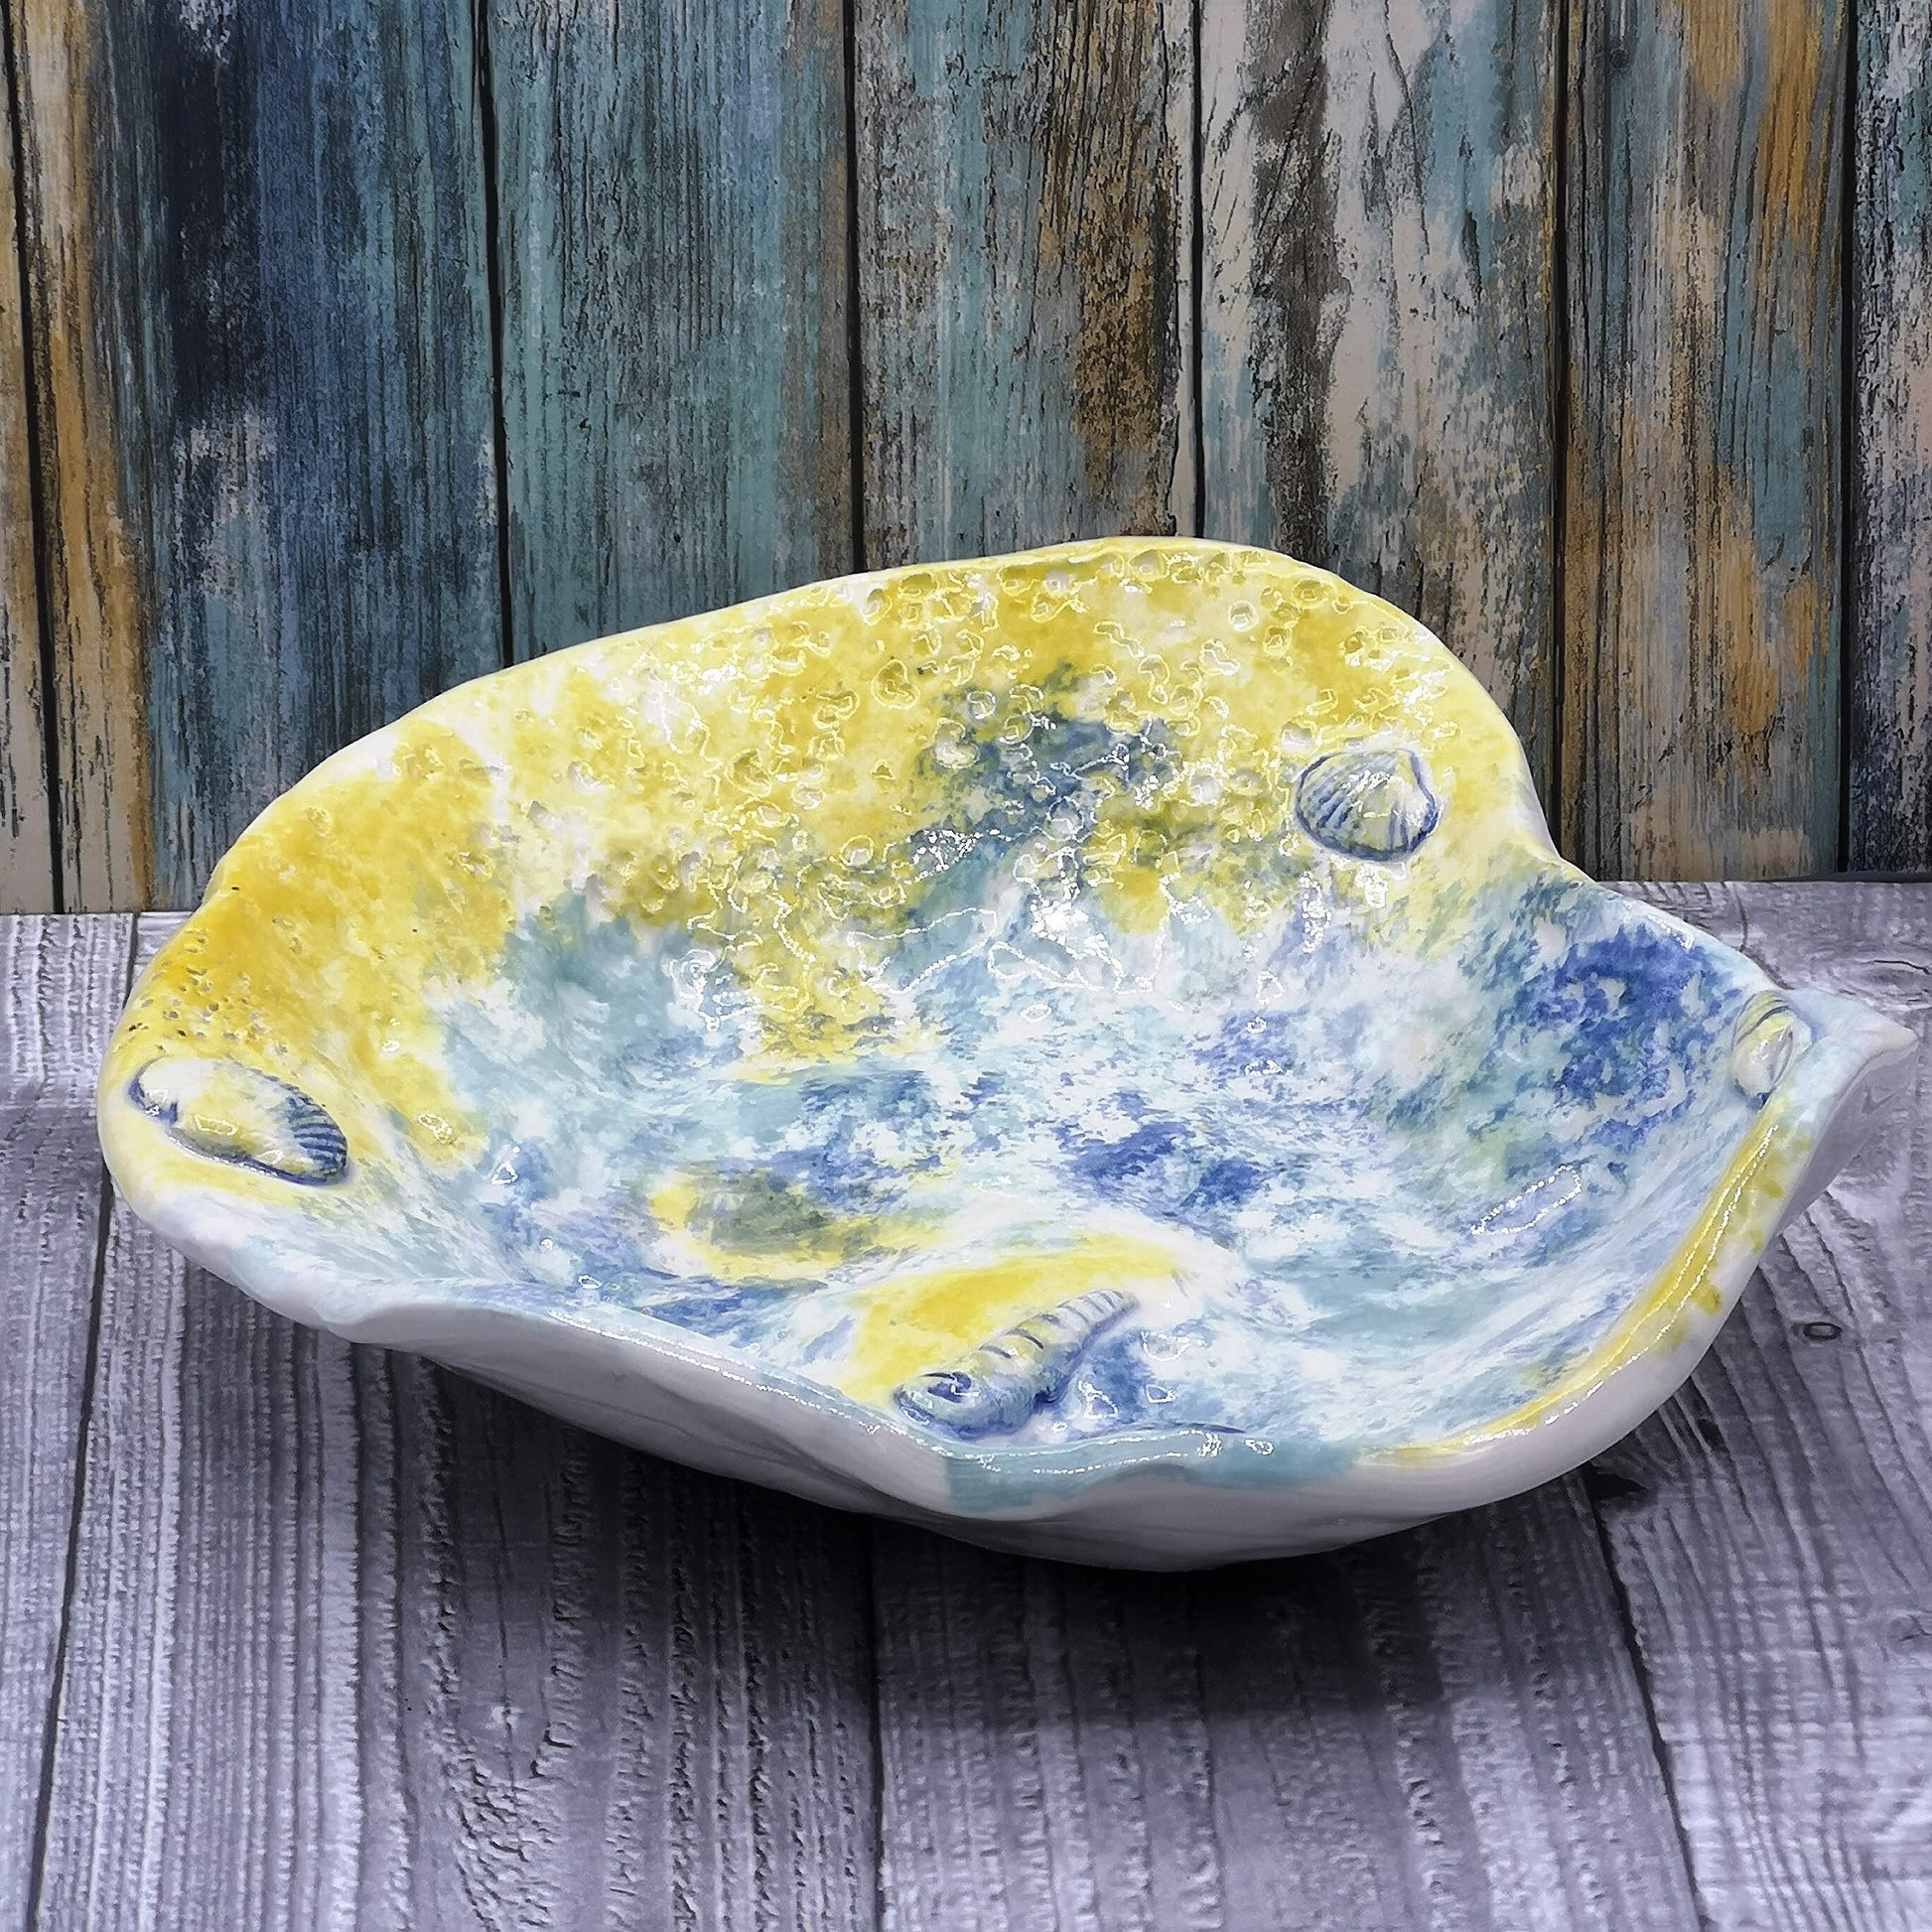 Decorative Bowl, Hand Painted Key Bowl Beach Themed Decor, Handmade Ceramic Bowl, Boho Bathroom Decor, Large Centerpiece Bowl - Ceramica Ana Rafael